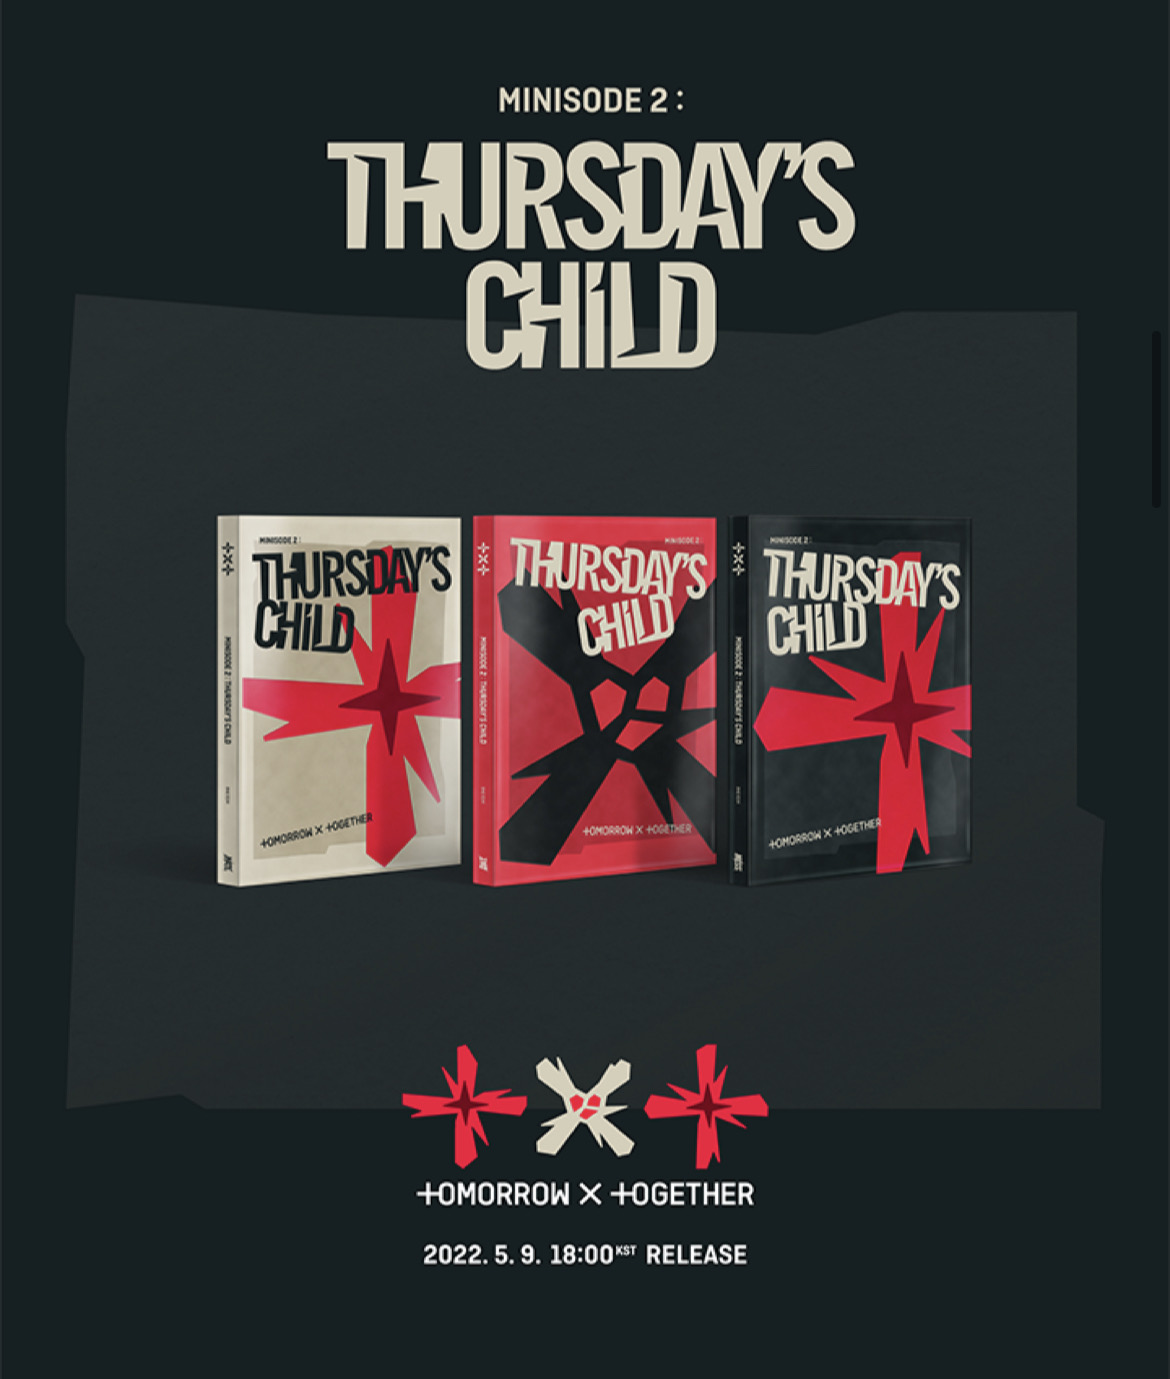 Txt thursday. Minisode 2: Thursday's child карты. Txt Minisode 2 Thursday's child. Txt - Minisode 2: Thursday's child карты. Txt Thursday's child карты.